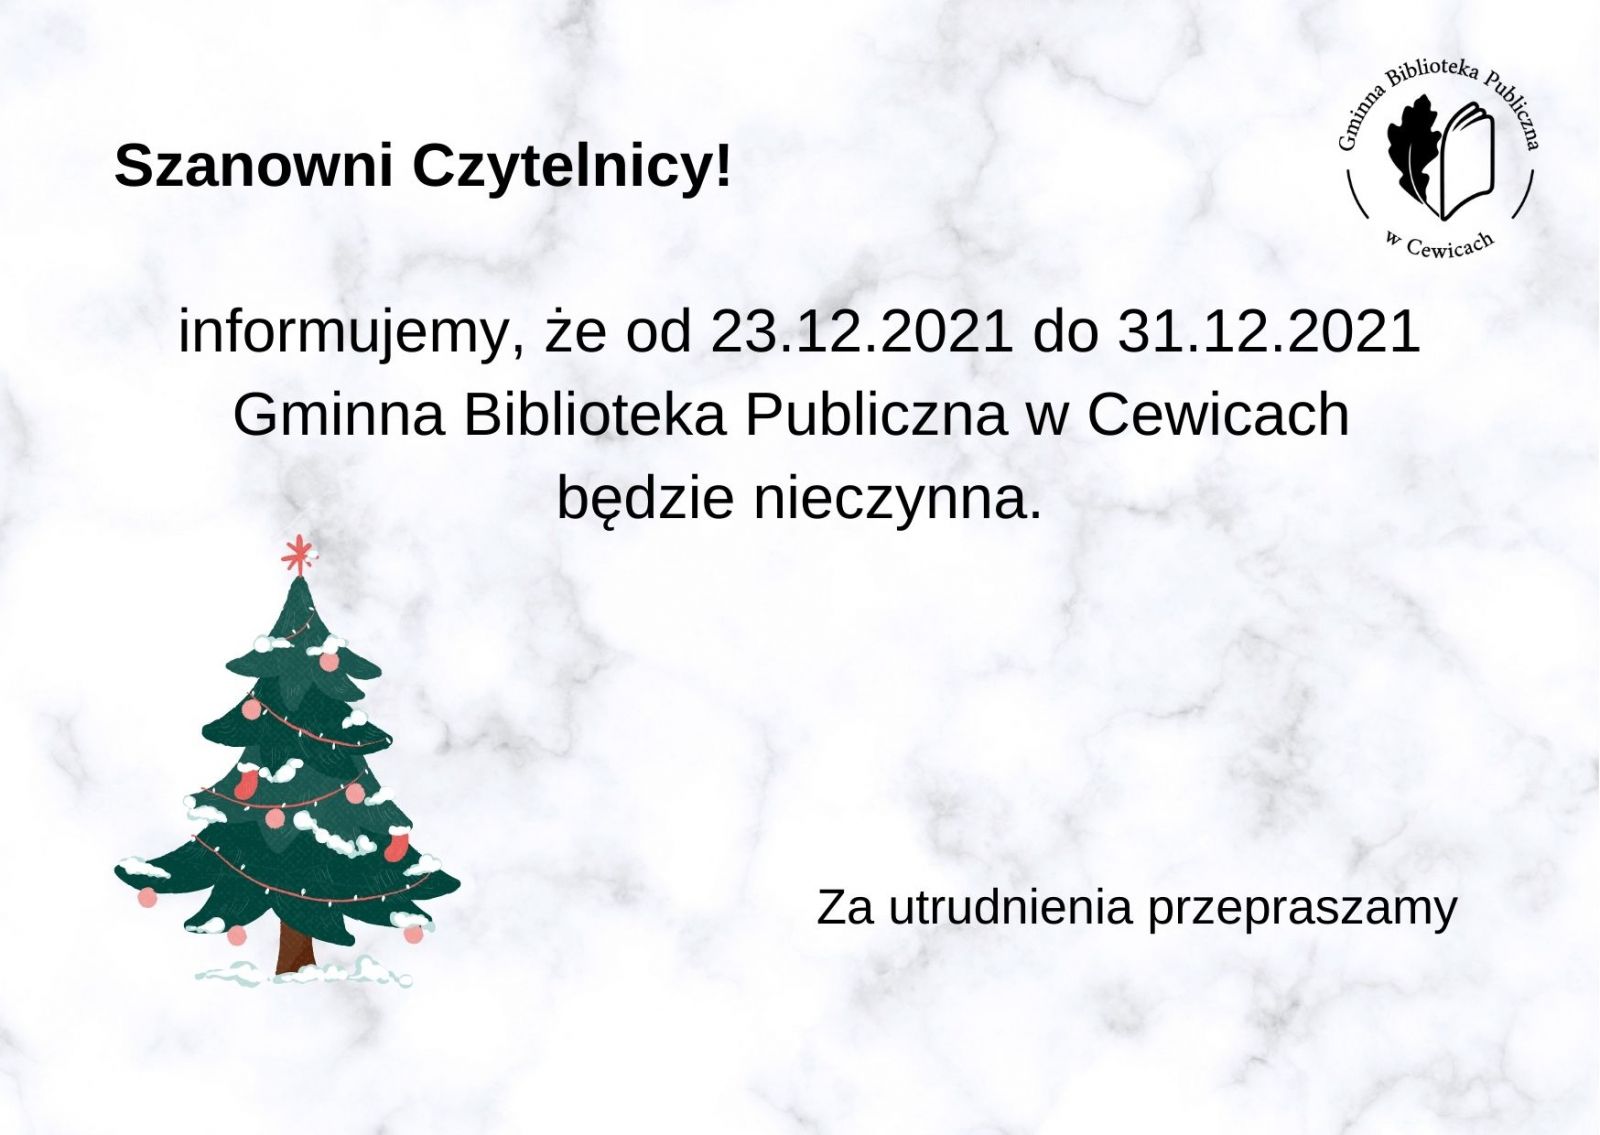 Szanowni Czytelnicy iformujemy, że od 23.12.2021 do 31.12.2021 Gminna Biblioteka w Cewicach będzie nieczynna. Za utrudnienia przepraszamy.